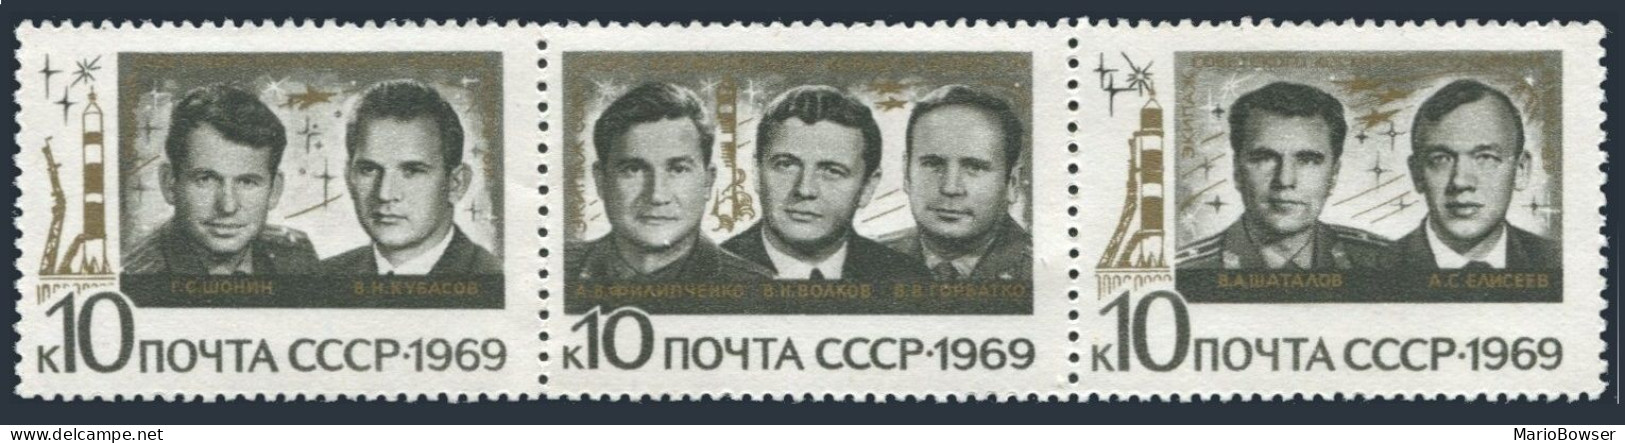 Russia 3655-3657 Singles,MNH.Michel 3682-3684. Group Flight Soyuz 6-7-8.1969. - Neufs